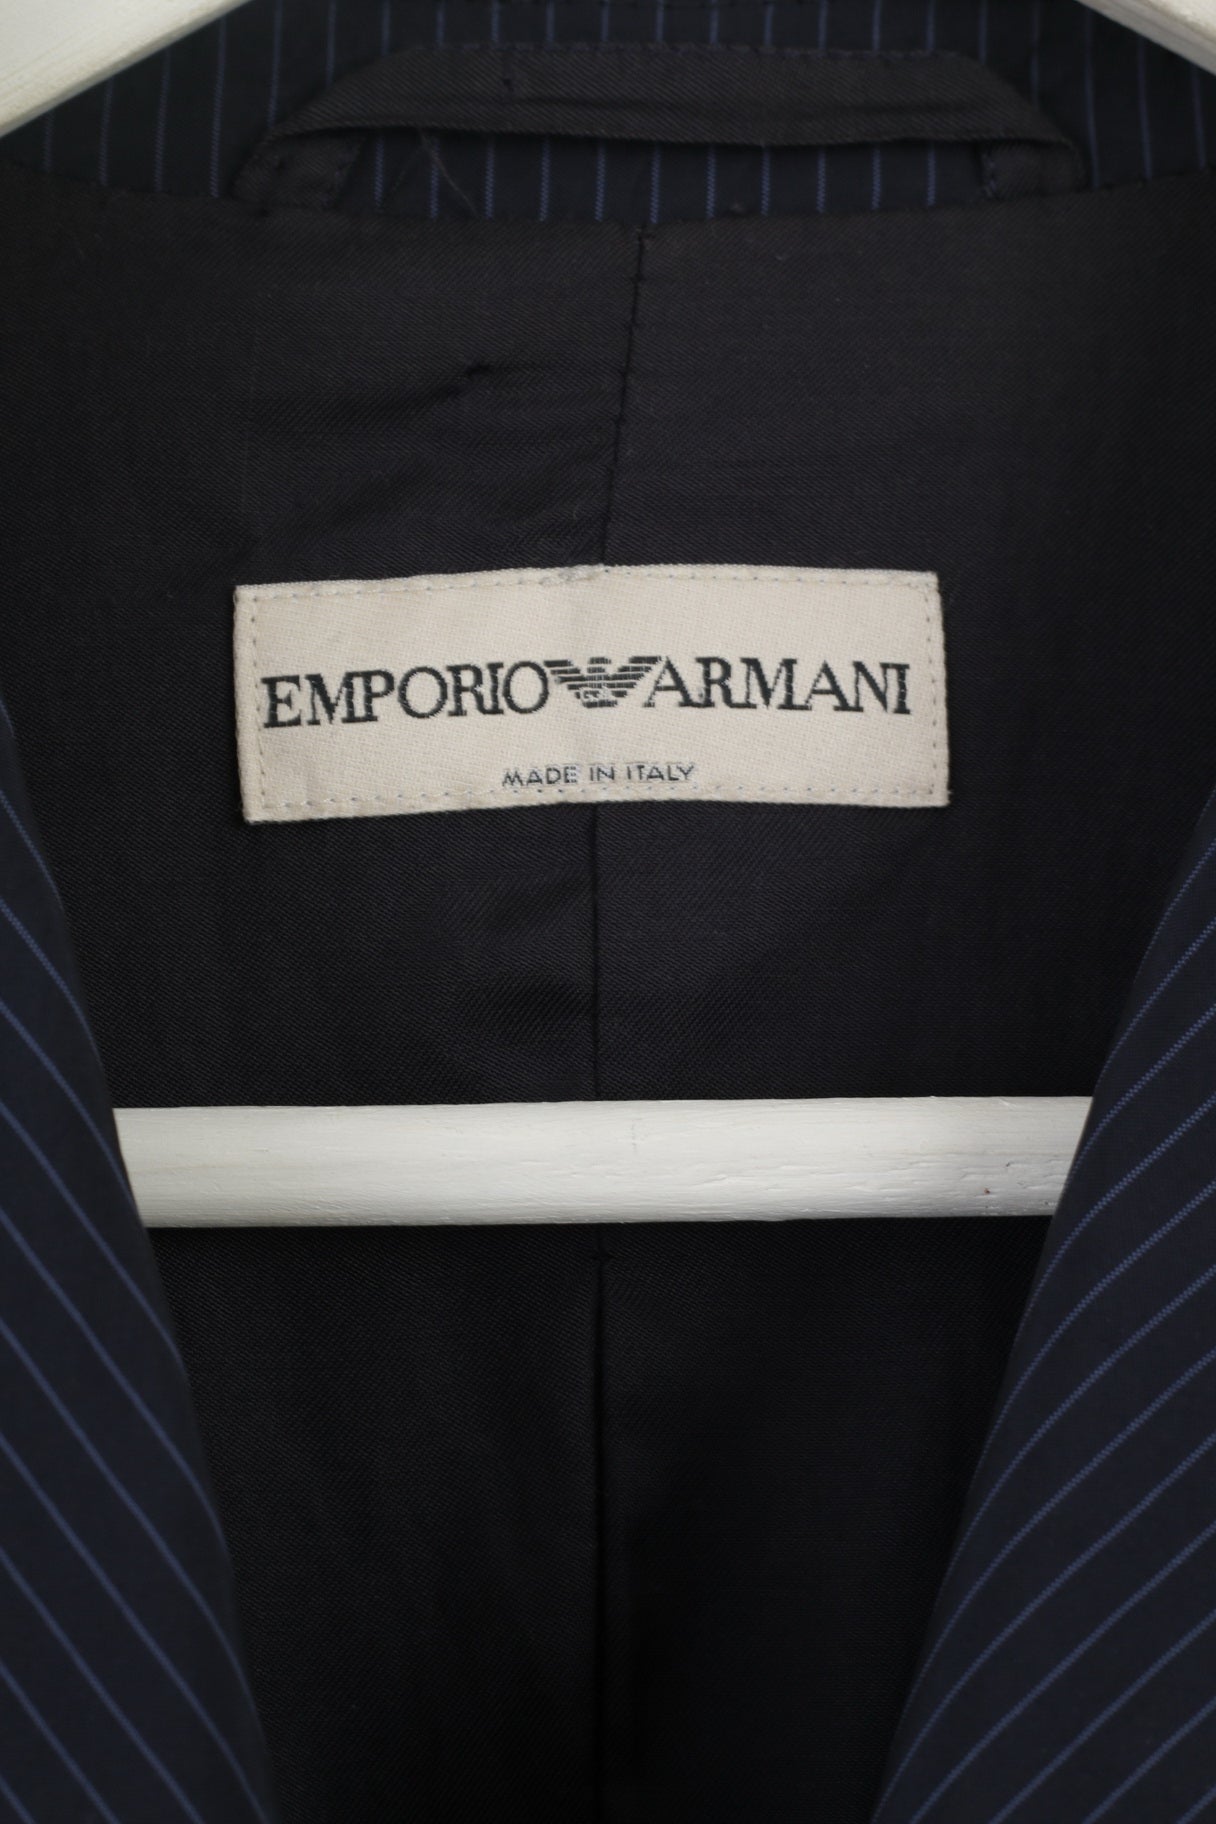 emporio armani made in - 56% OFF 